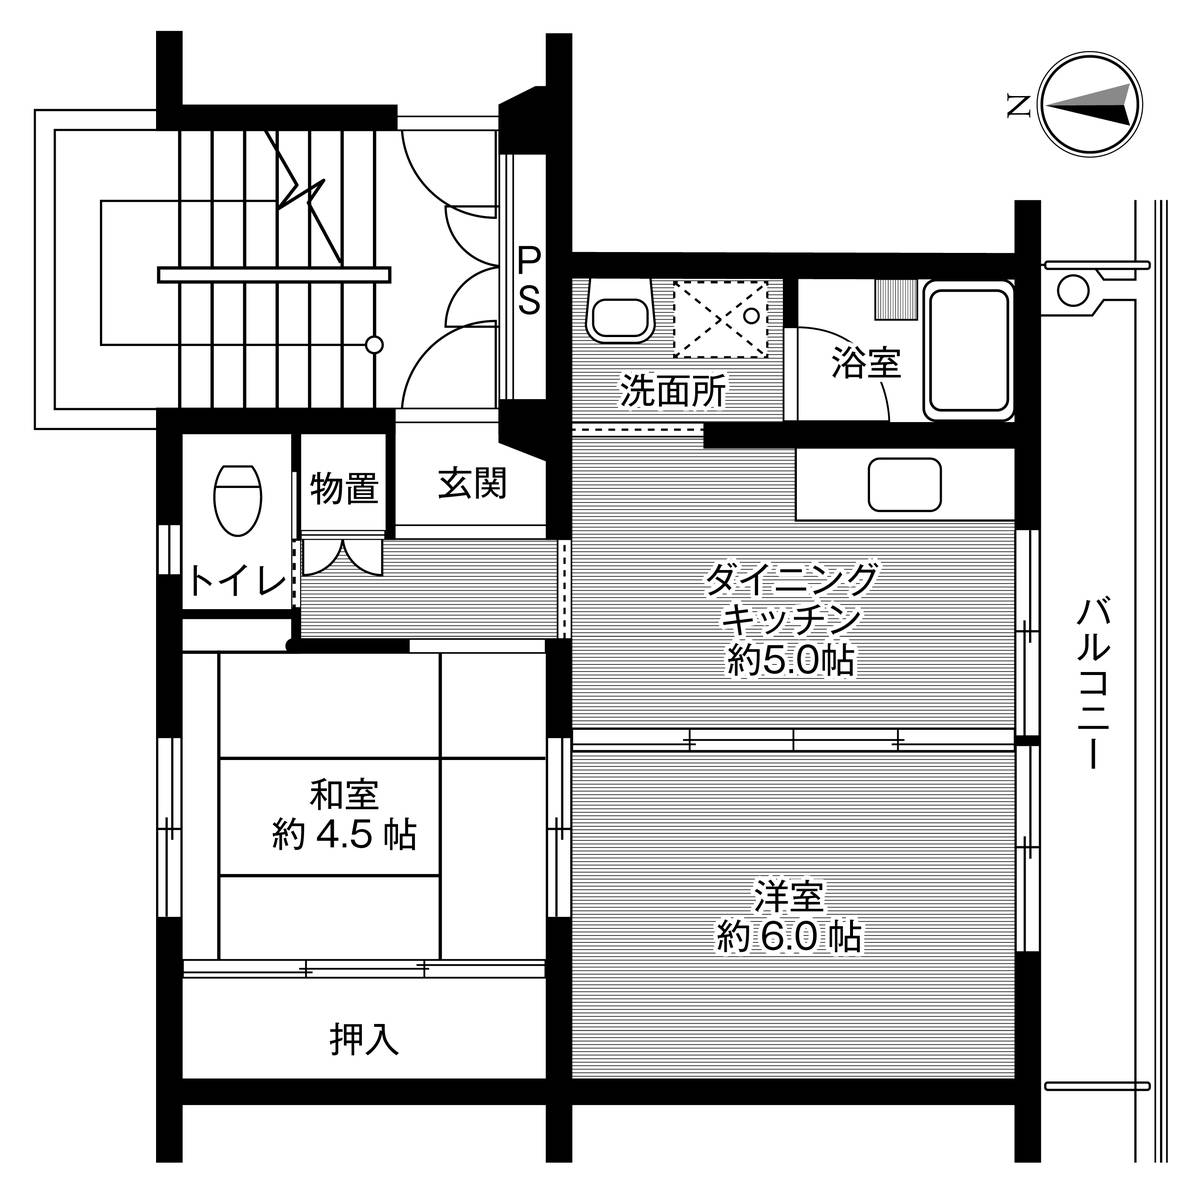 2DK floorplan of Village House Saruhashi in Otsuki-shi